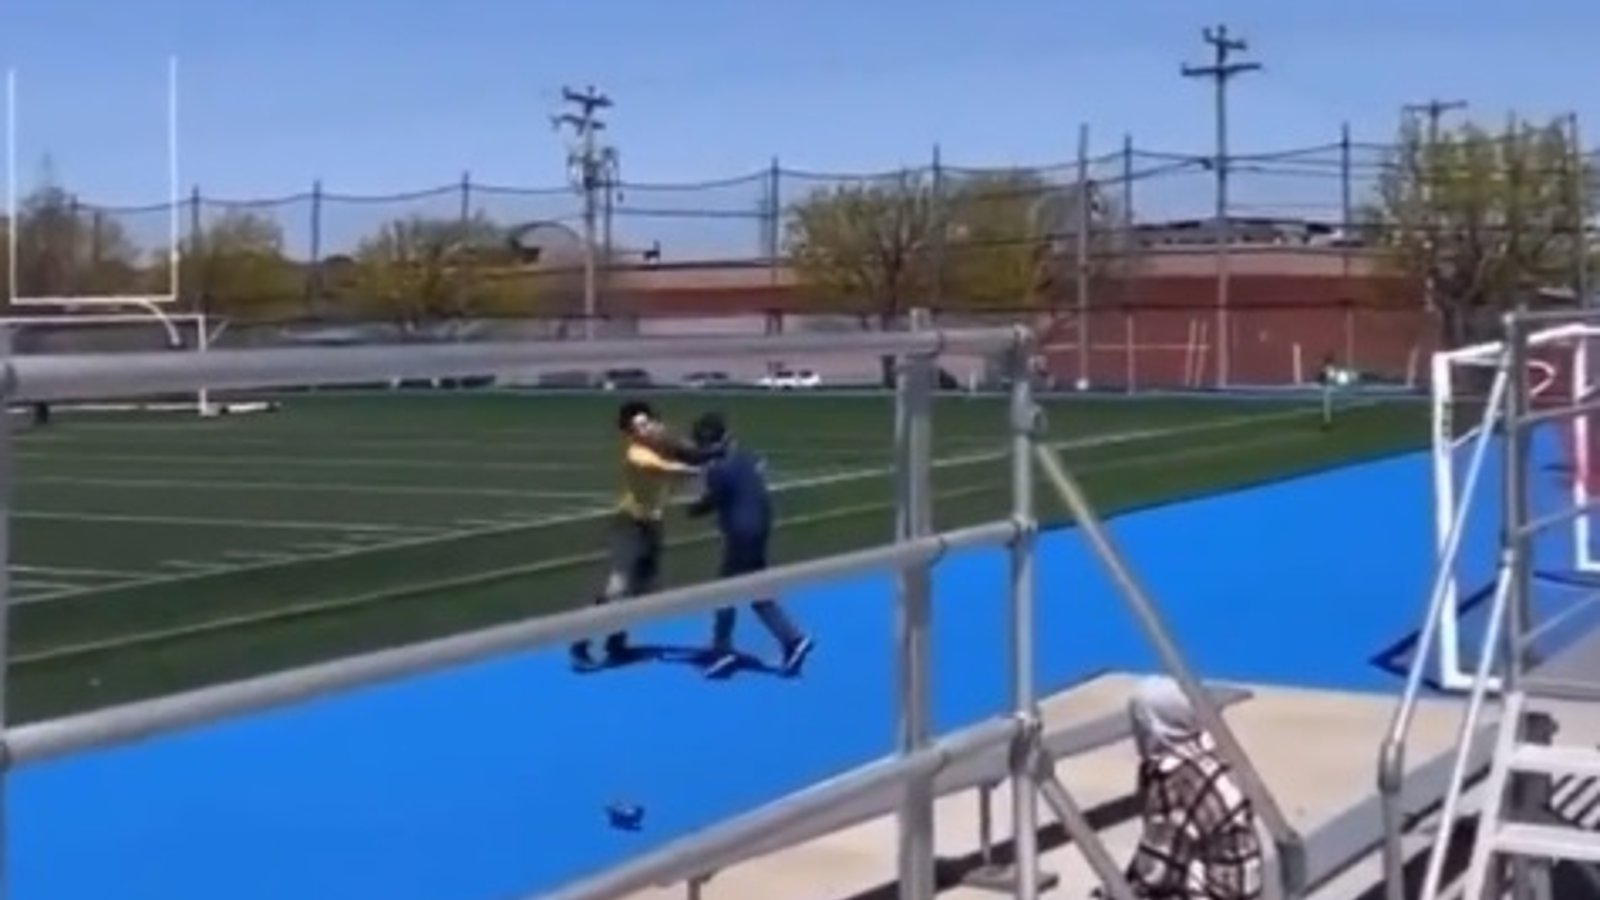 Un adulte saute sur un terrain de soccer pour frapper un arbitre mineur